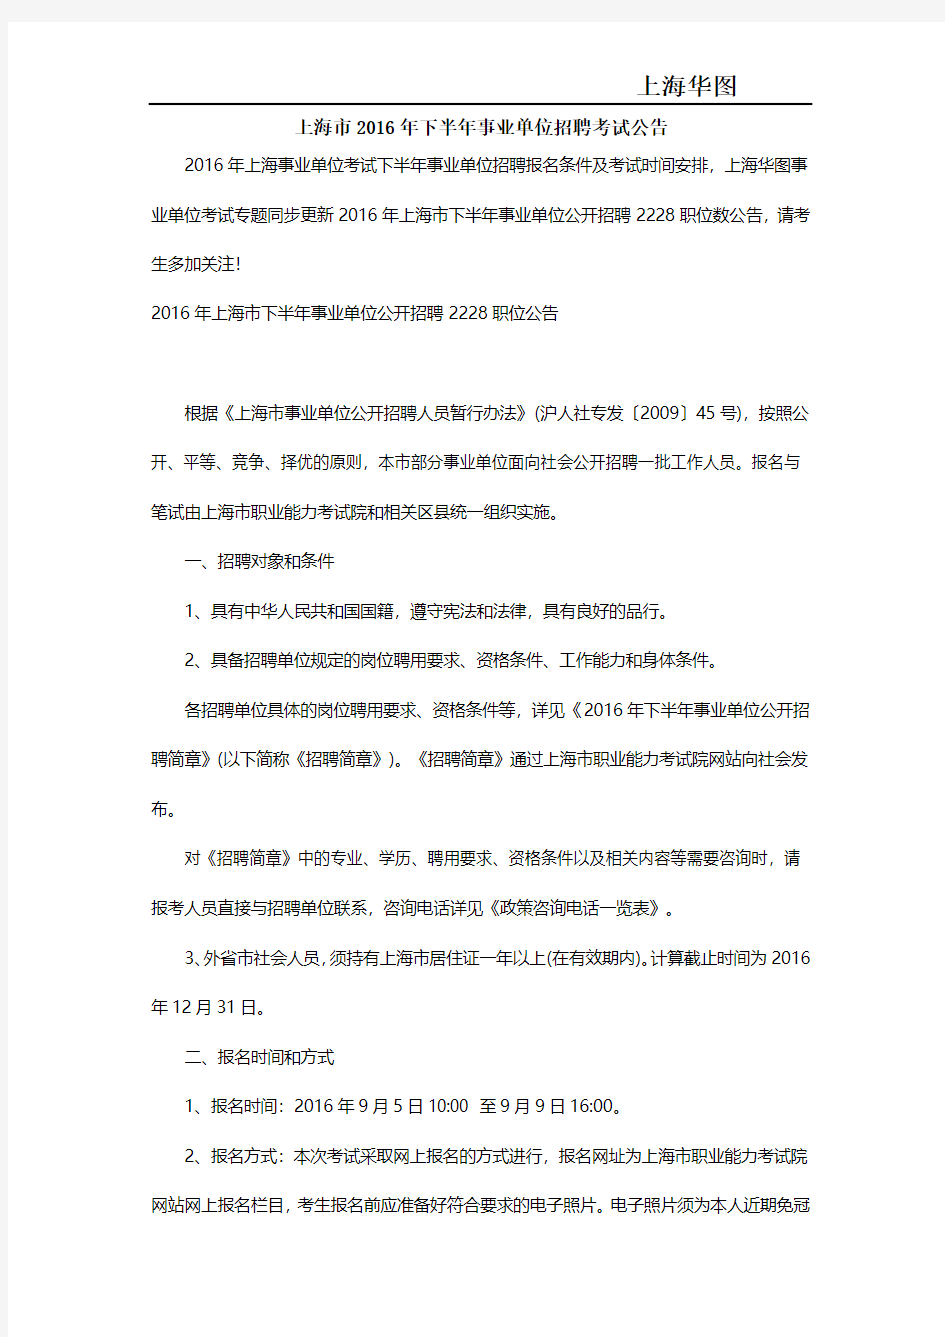 上海市2016年下半年事业单位招聘考试公告